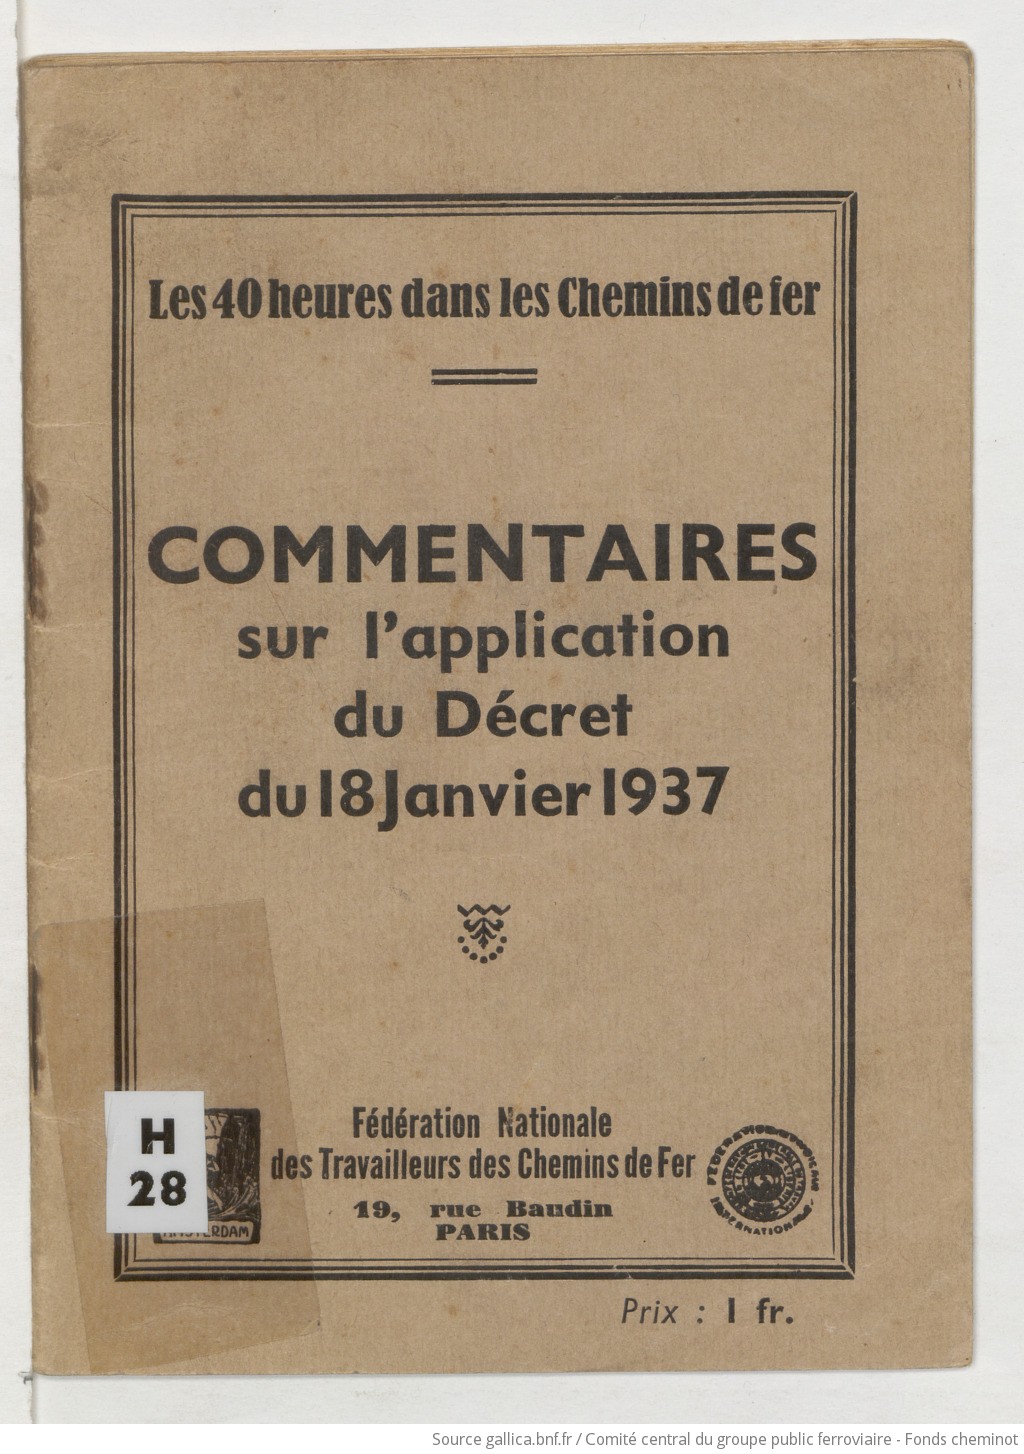 Les 40 heures dans les chemins de fer : commentaires sur l'application du décret du 18 janvier 1937